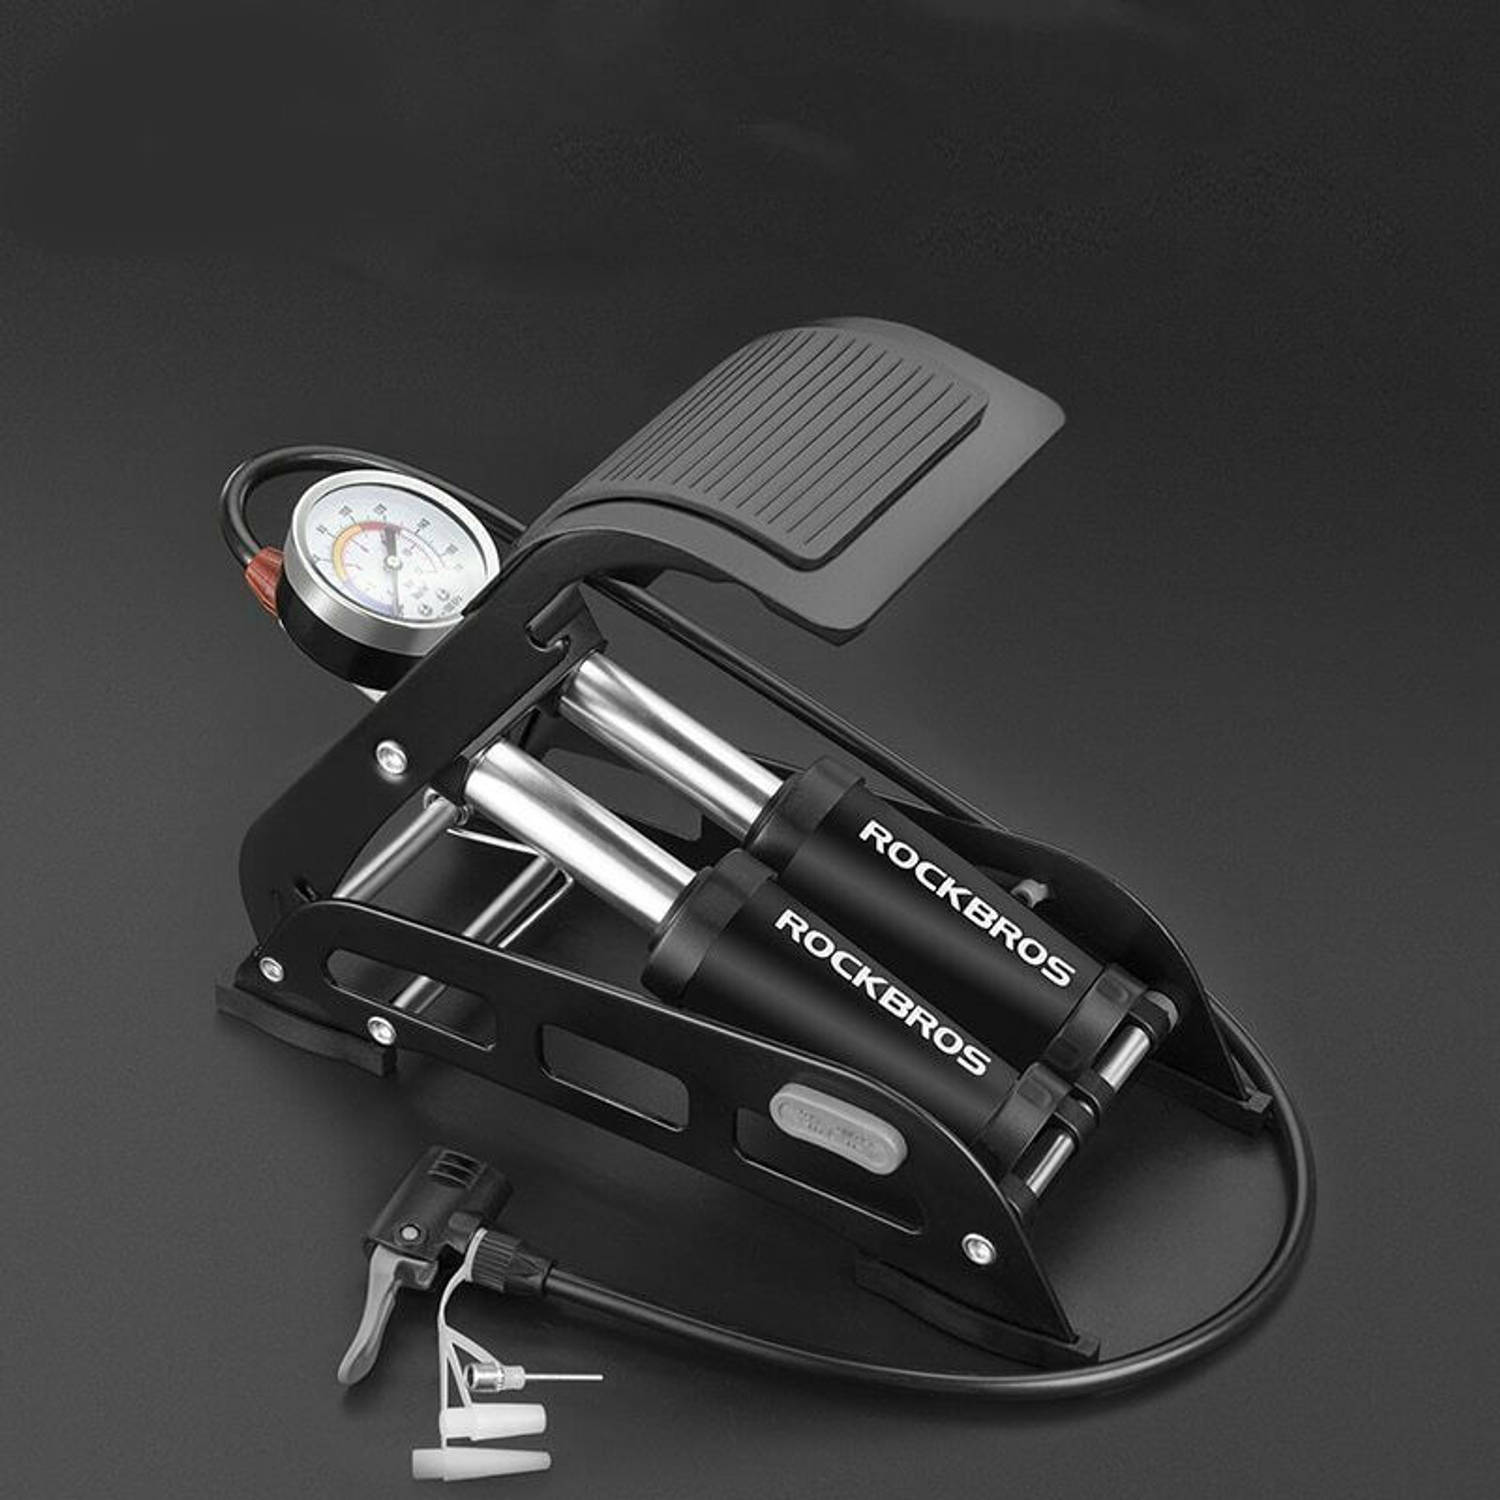 PRO Luxe Voetpomp - Voetpomp Dubbele Cilinder en Manometer - Voet | Blokker